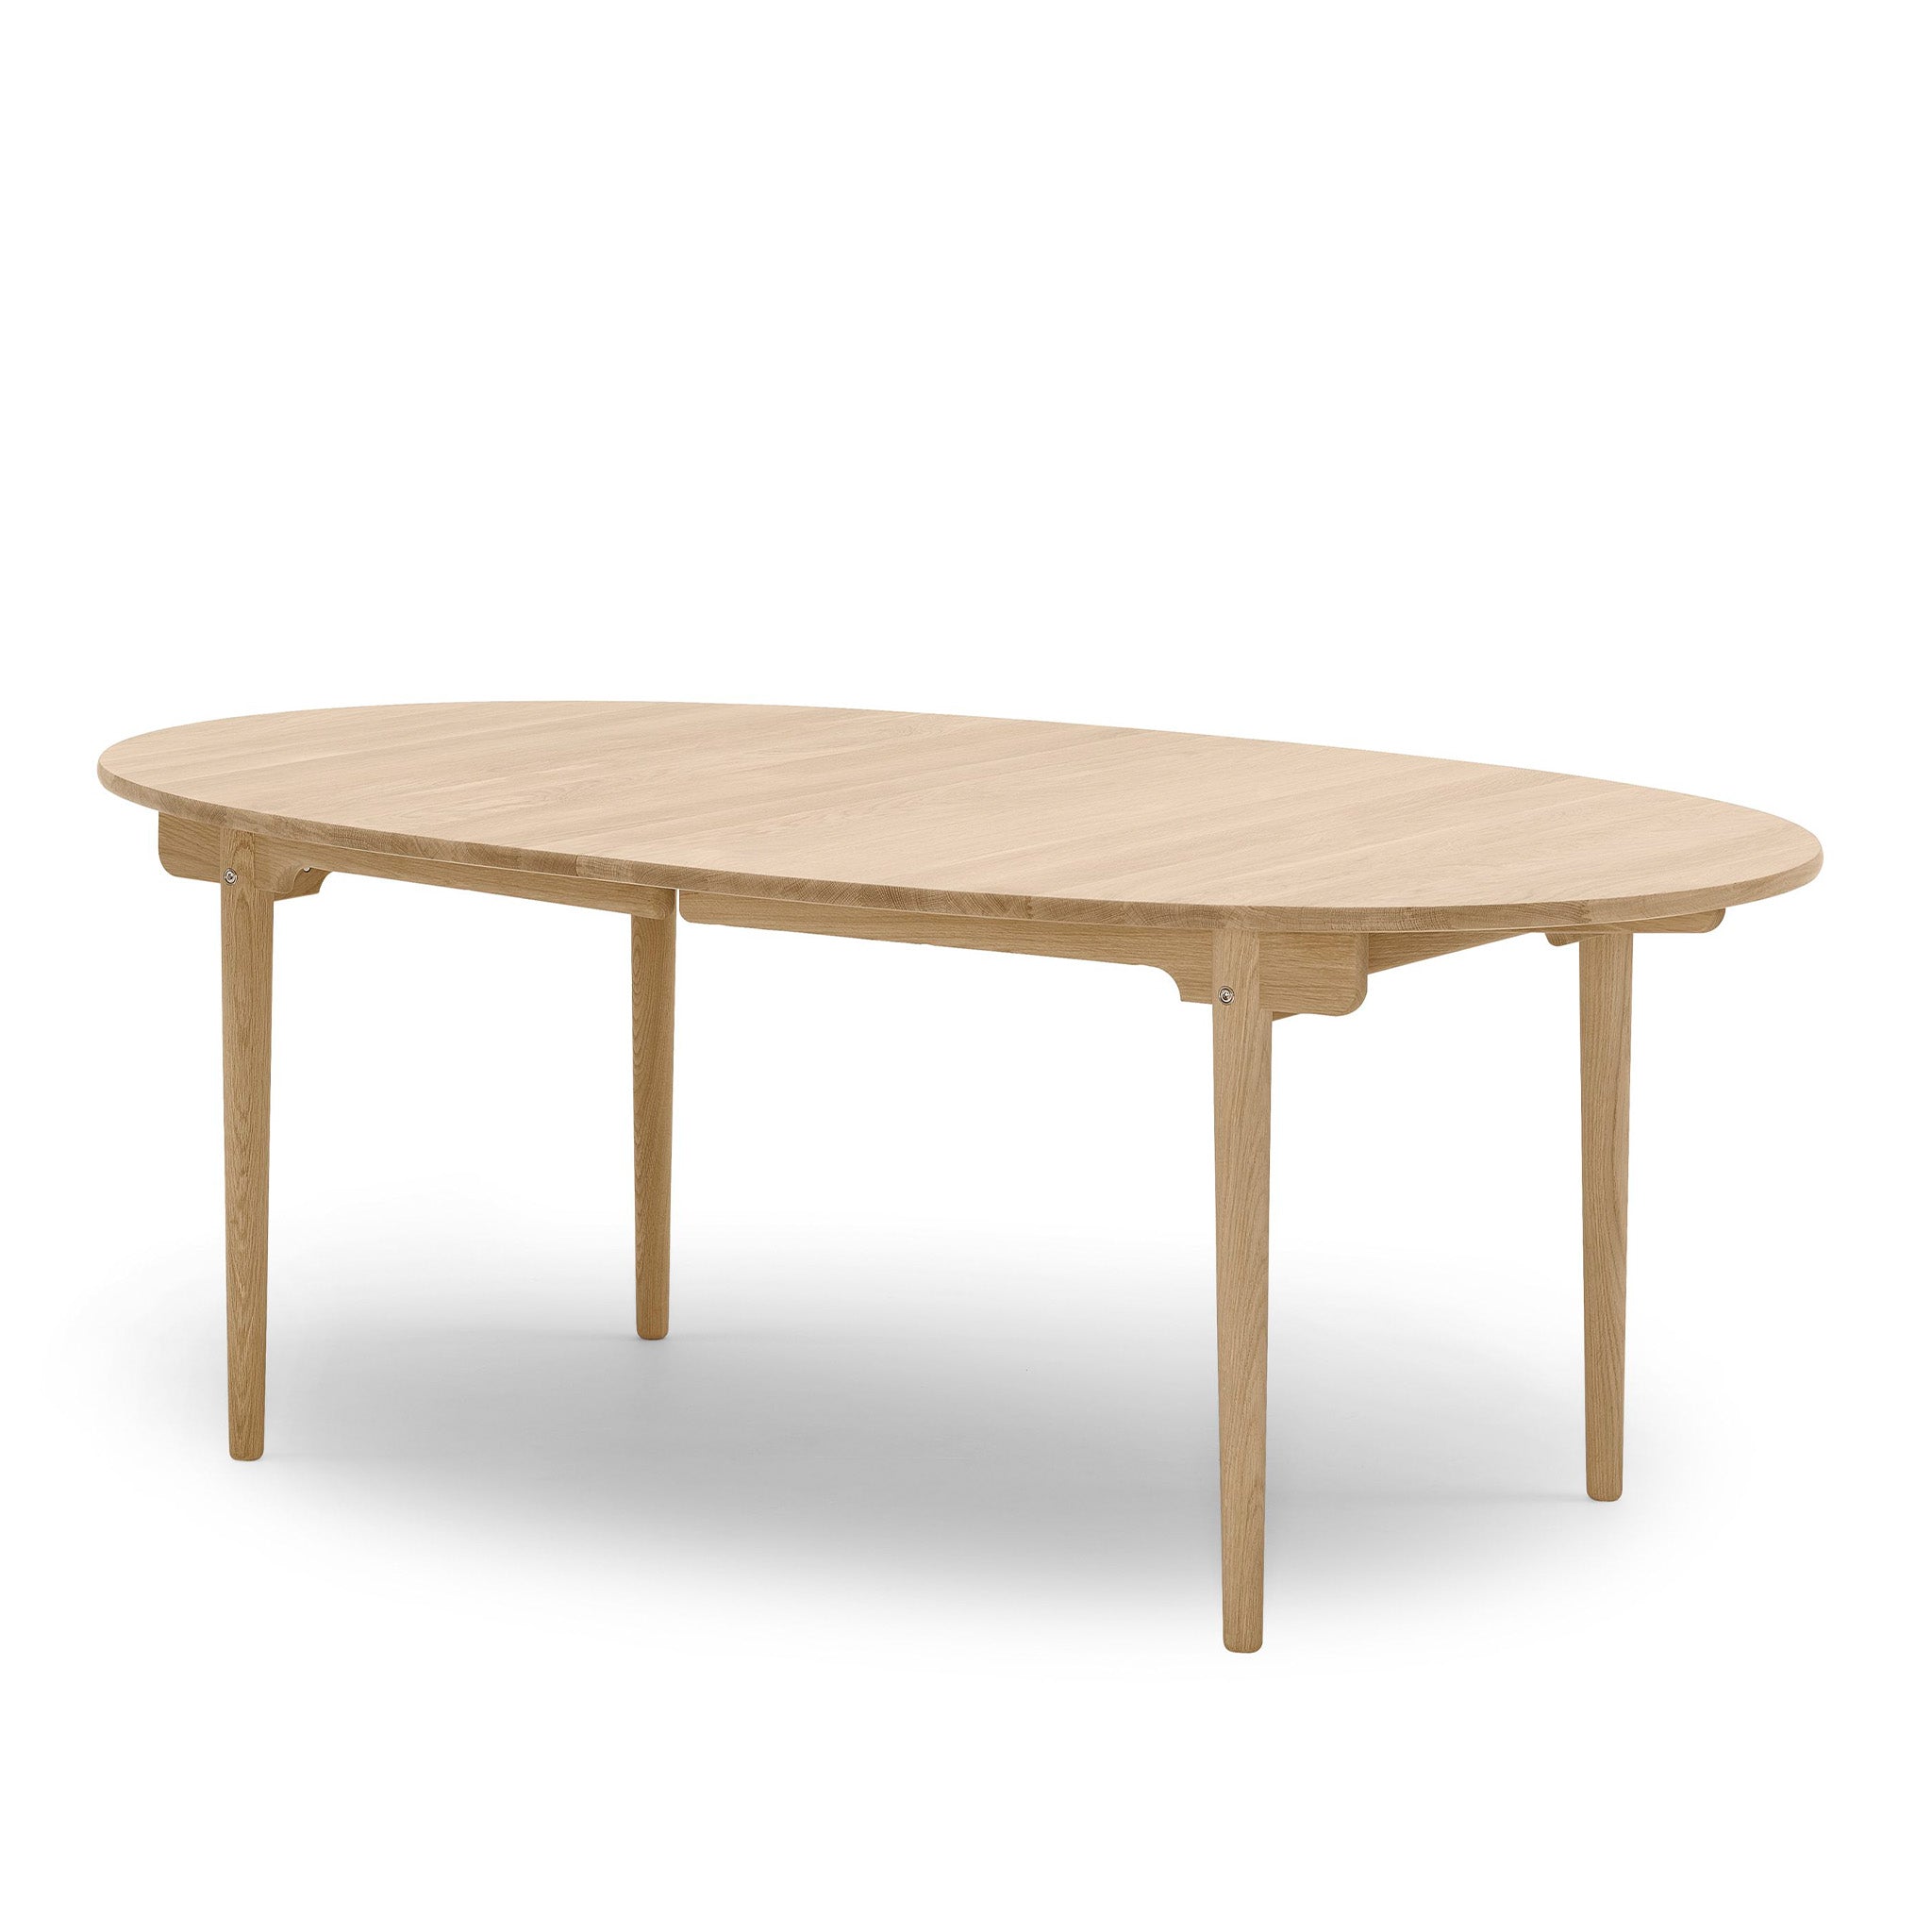 CH338 Table by Carl Hansen & Søn